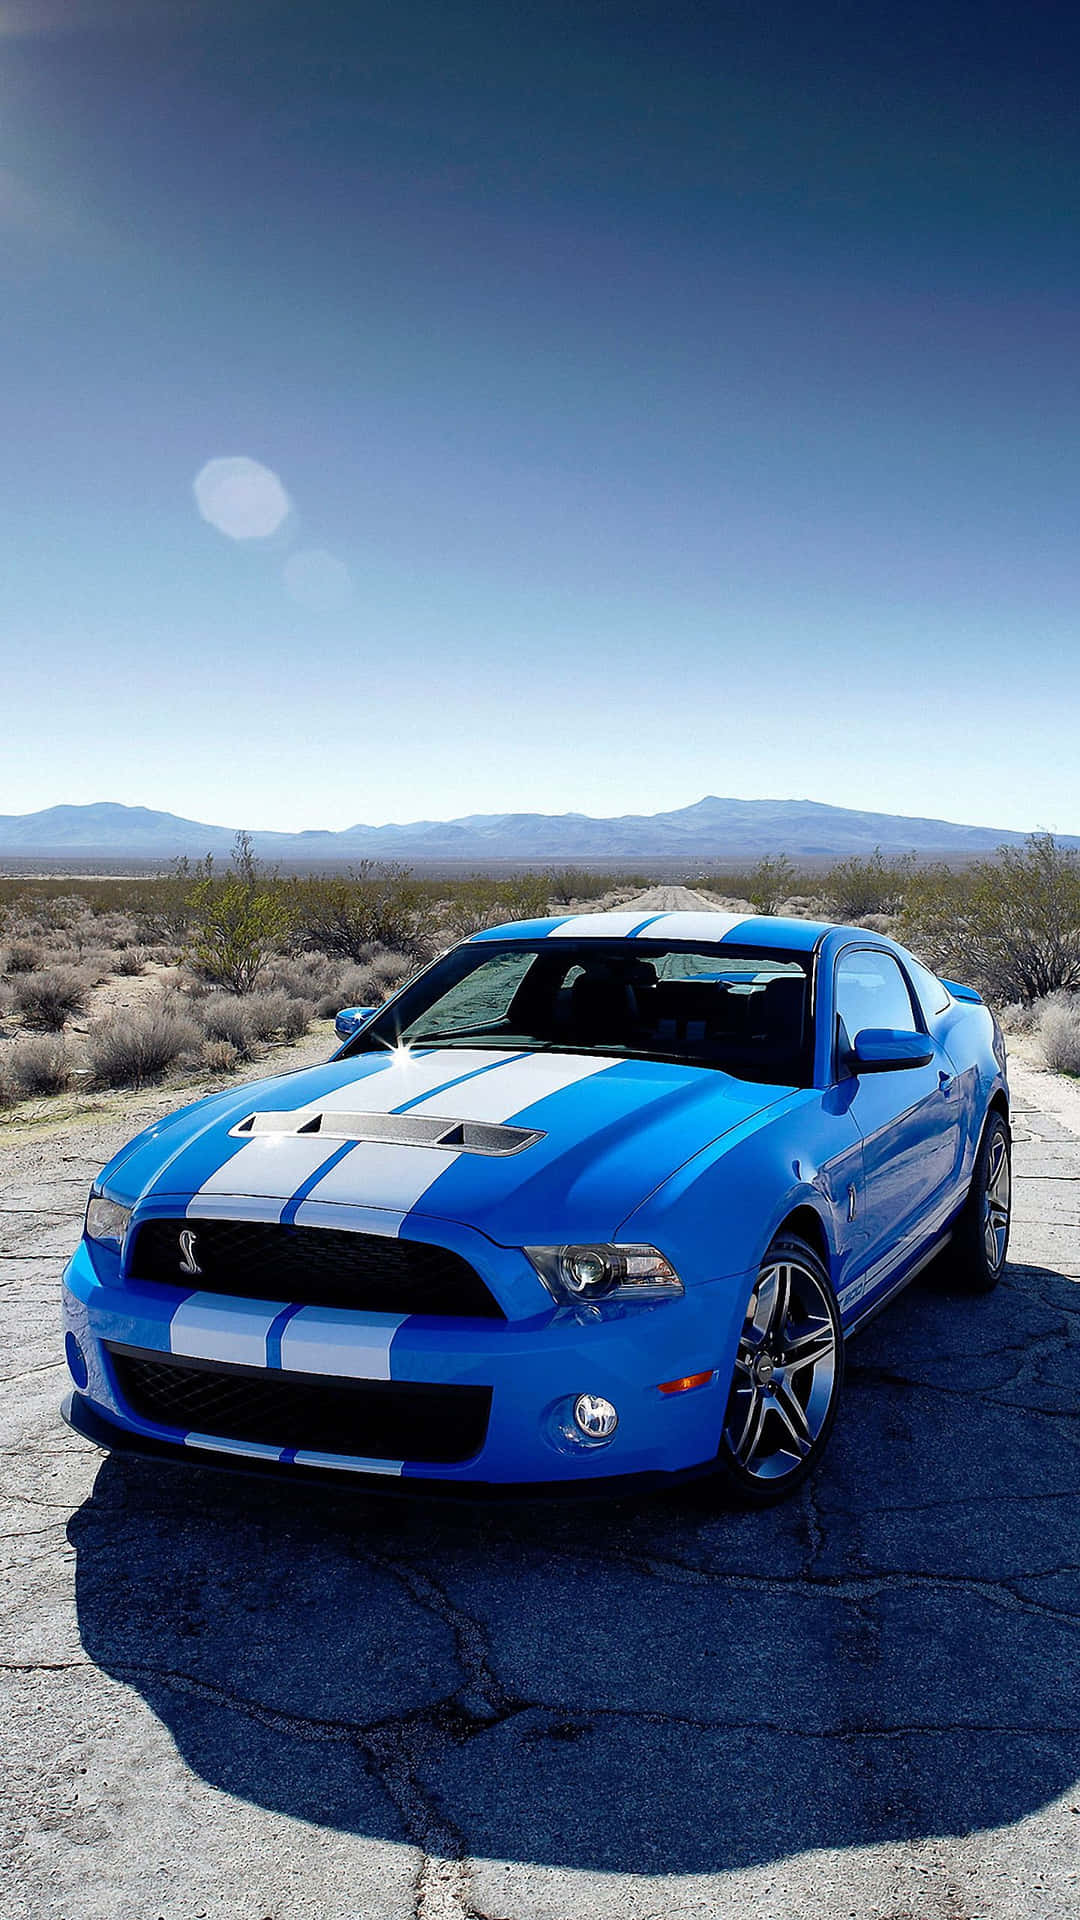 Enblå Ford Mustang Gt Parkerad I Öknen. Wallpaper